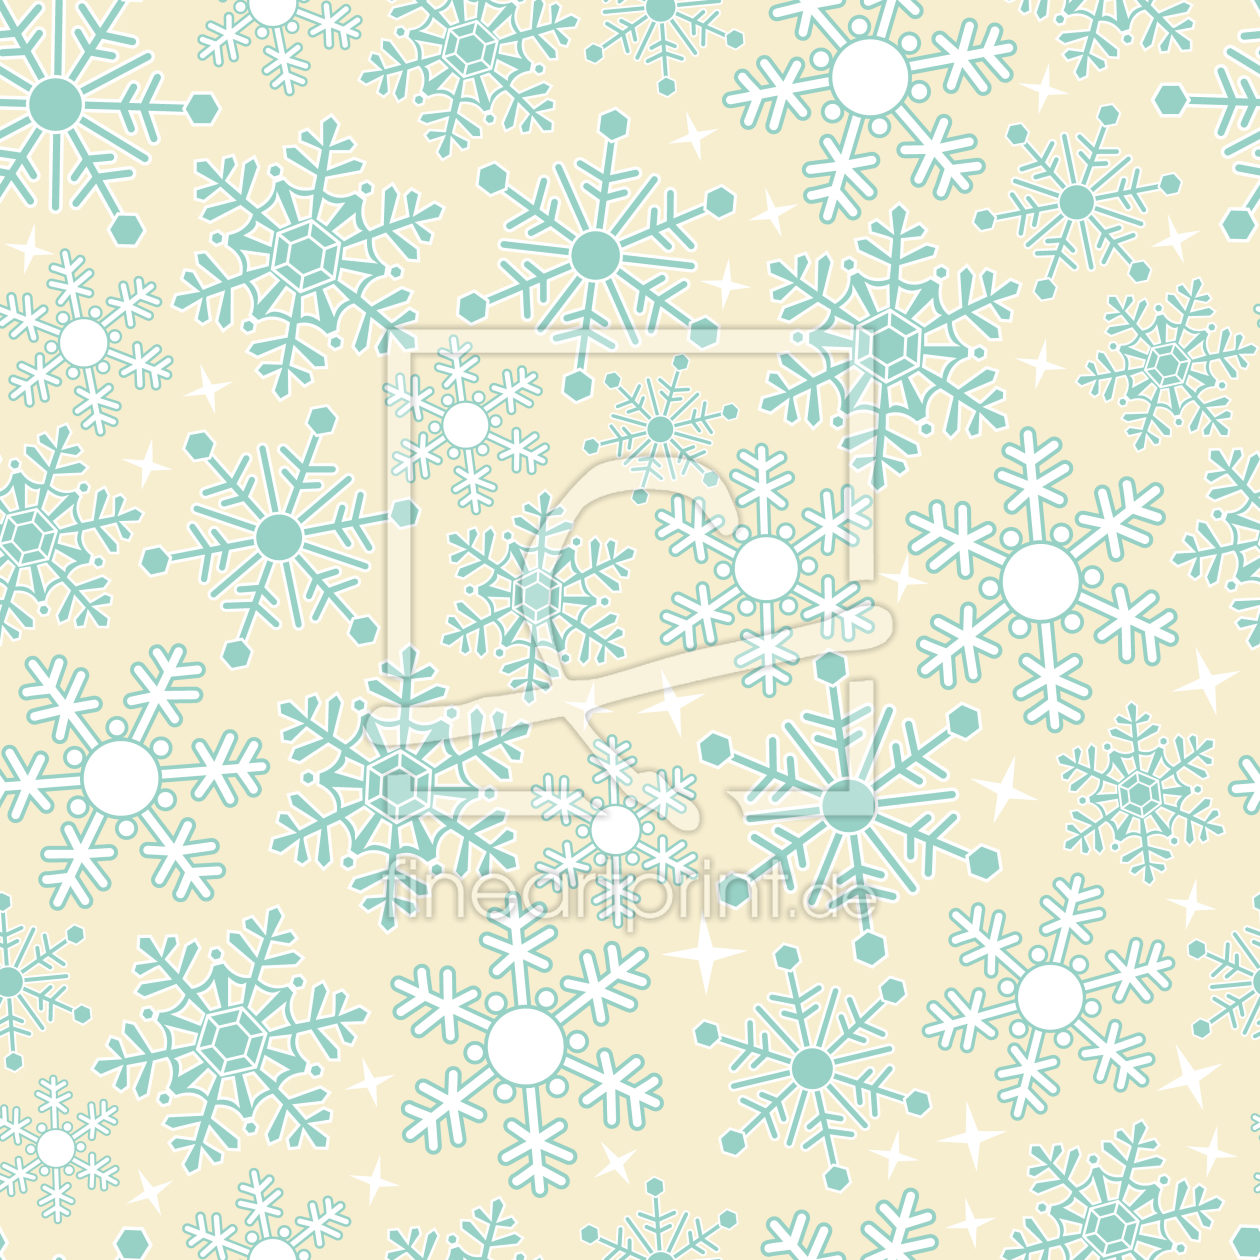 Bild-Nr.: 9014660 Ein Wahrgewordener Schneeflocken-Traum erstellt von patterndesigns-com